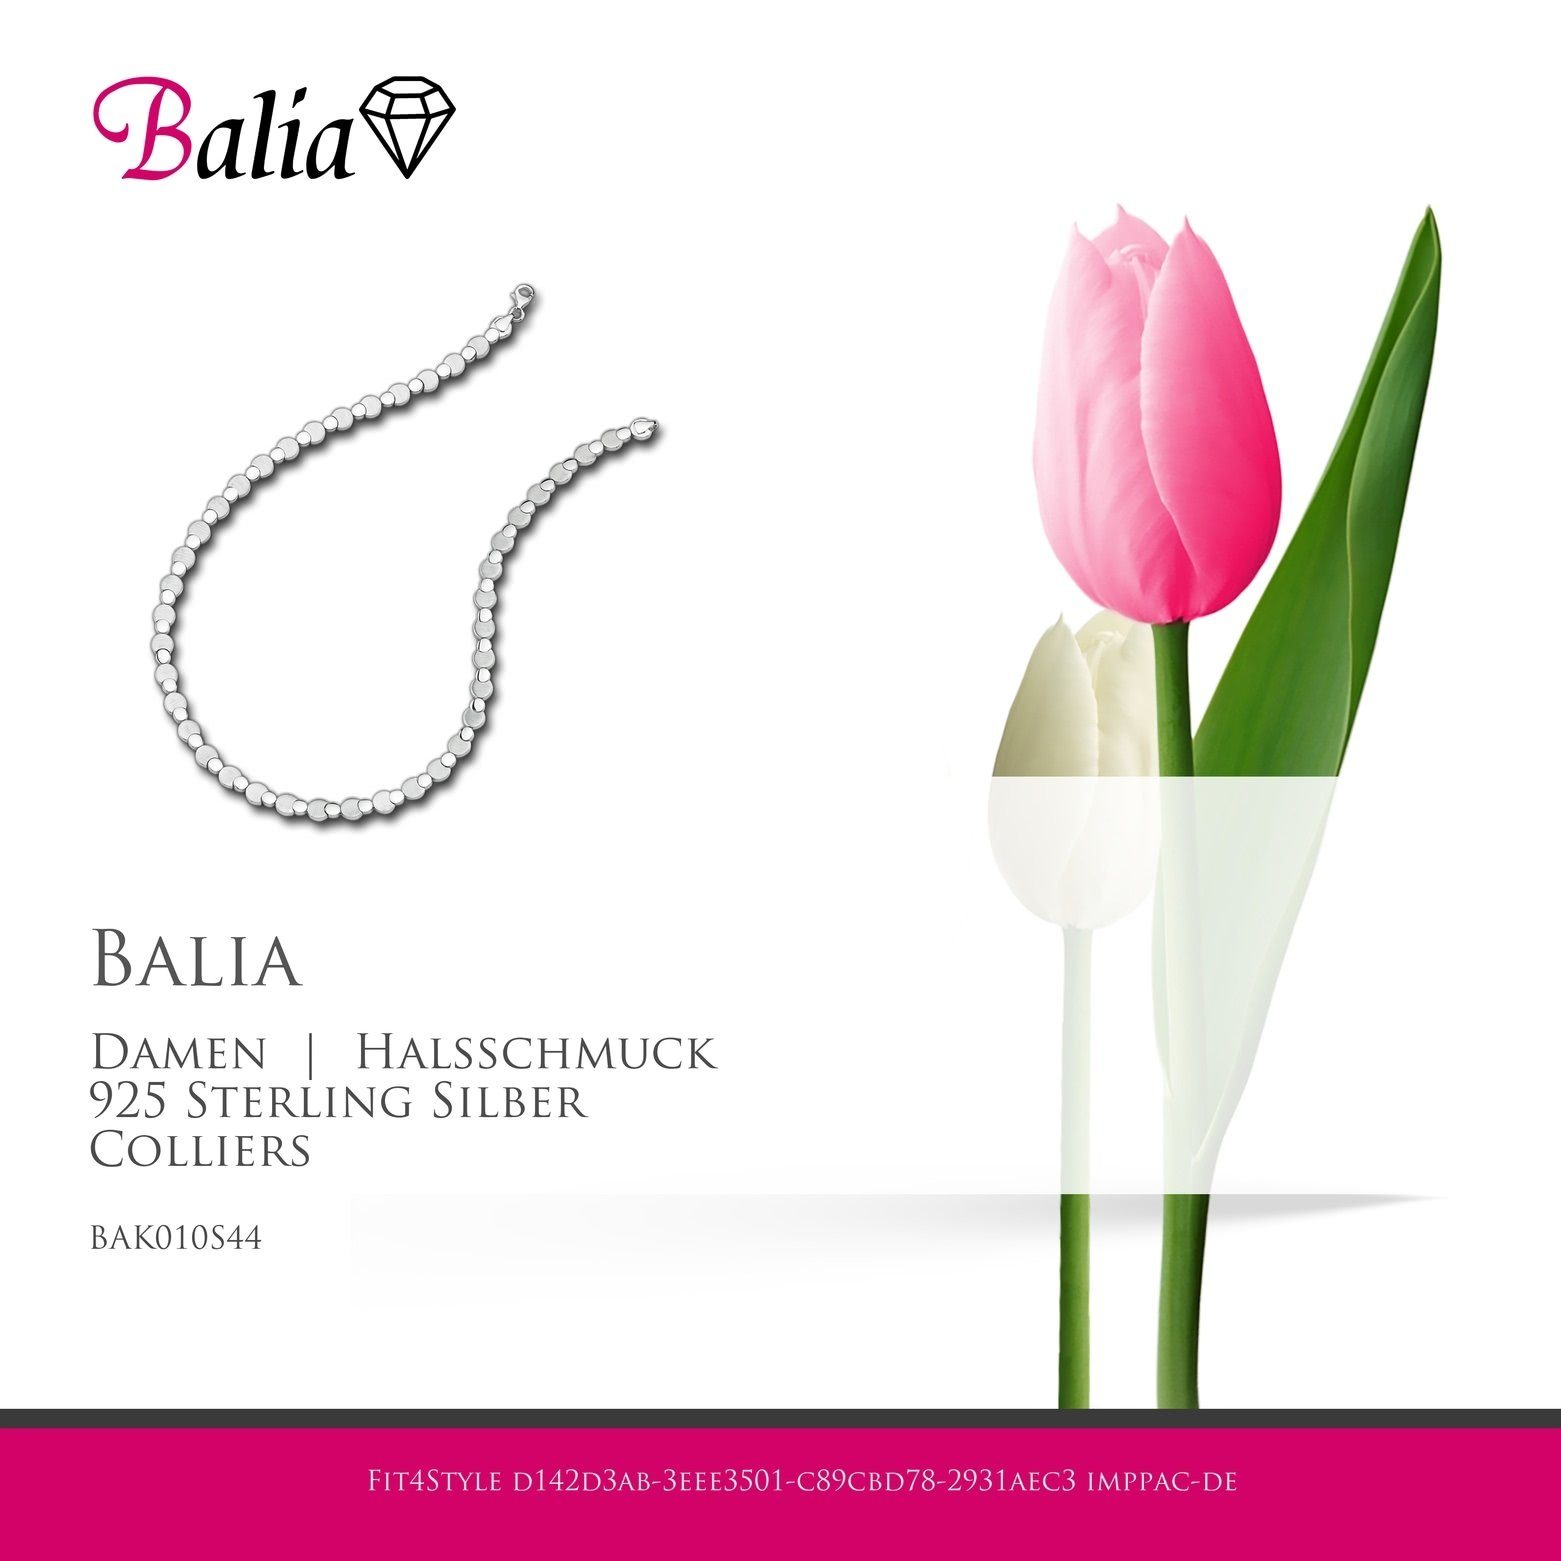 Colliers, Halsketten Collier für Balia poliert Collier 925 (Collier), Farbe: Sterling mattiert Balia silber Punkte Damen Silber, Damen